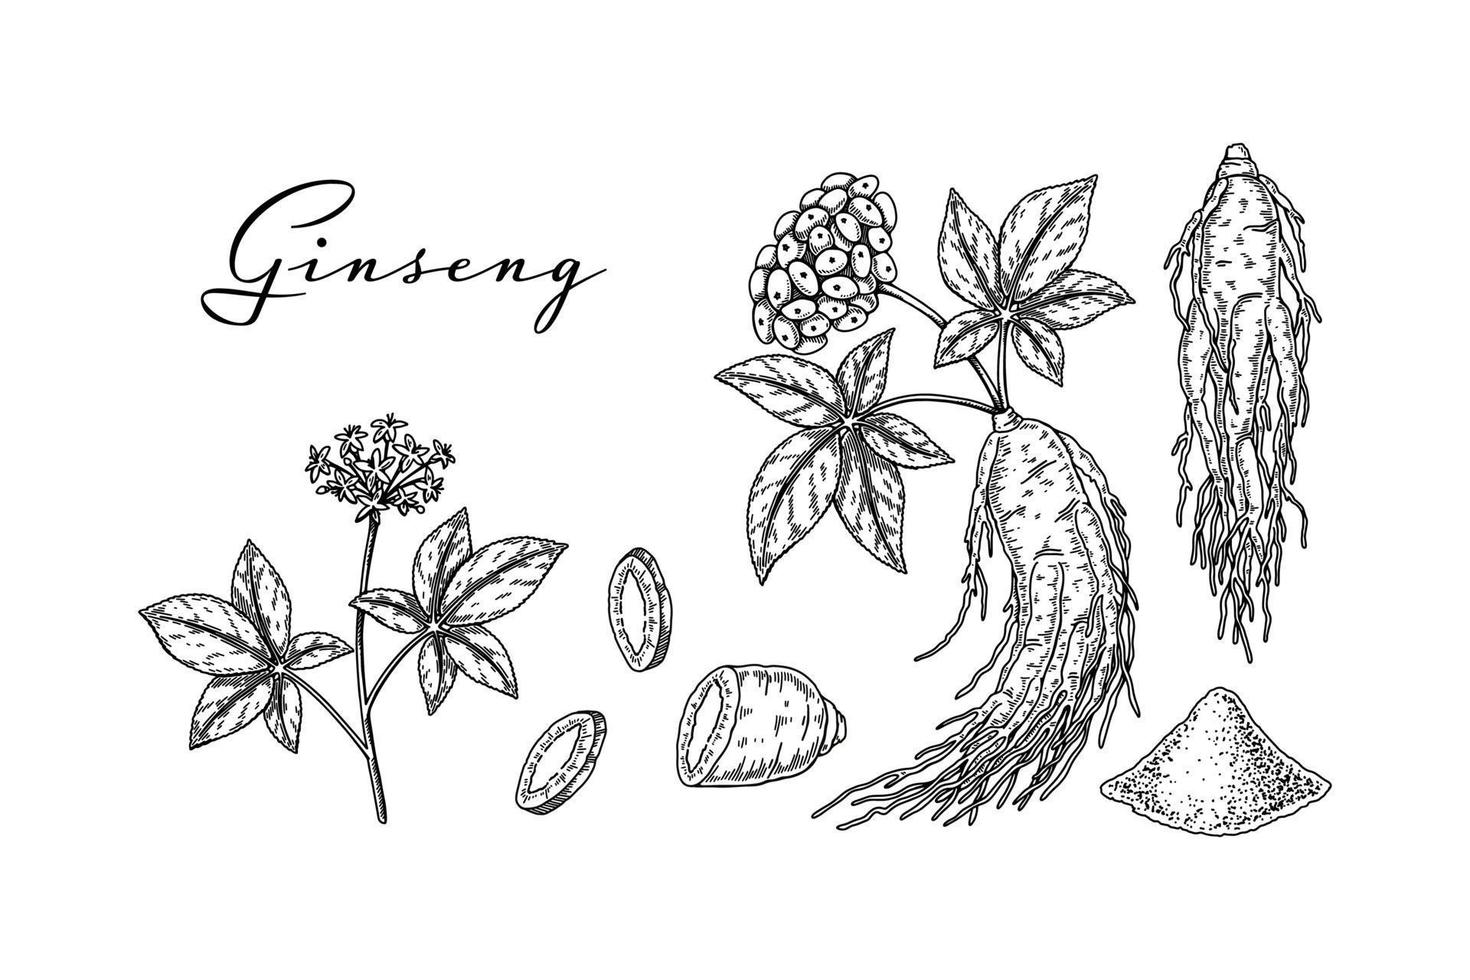 conjunto de raiz de ginseng selvagem desenhada à mão com folhas e frutos isolados no fundo branco. ilustração vetorial botânica em estilo de desenho para embalagem, logotipo, design de artigos científicos vetor